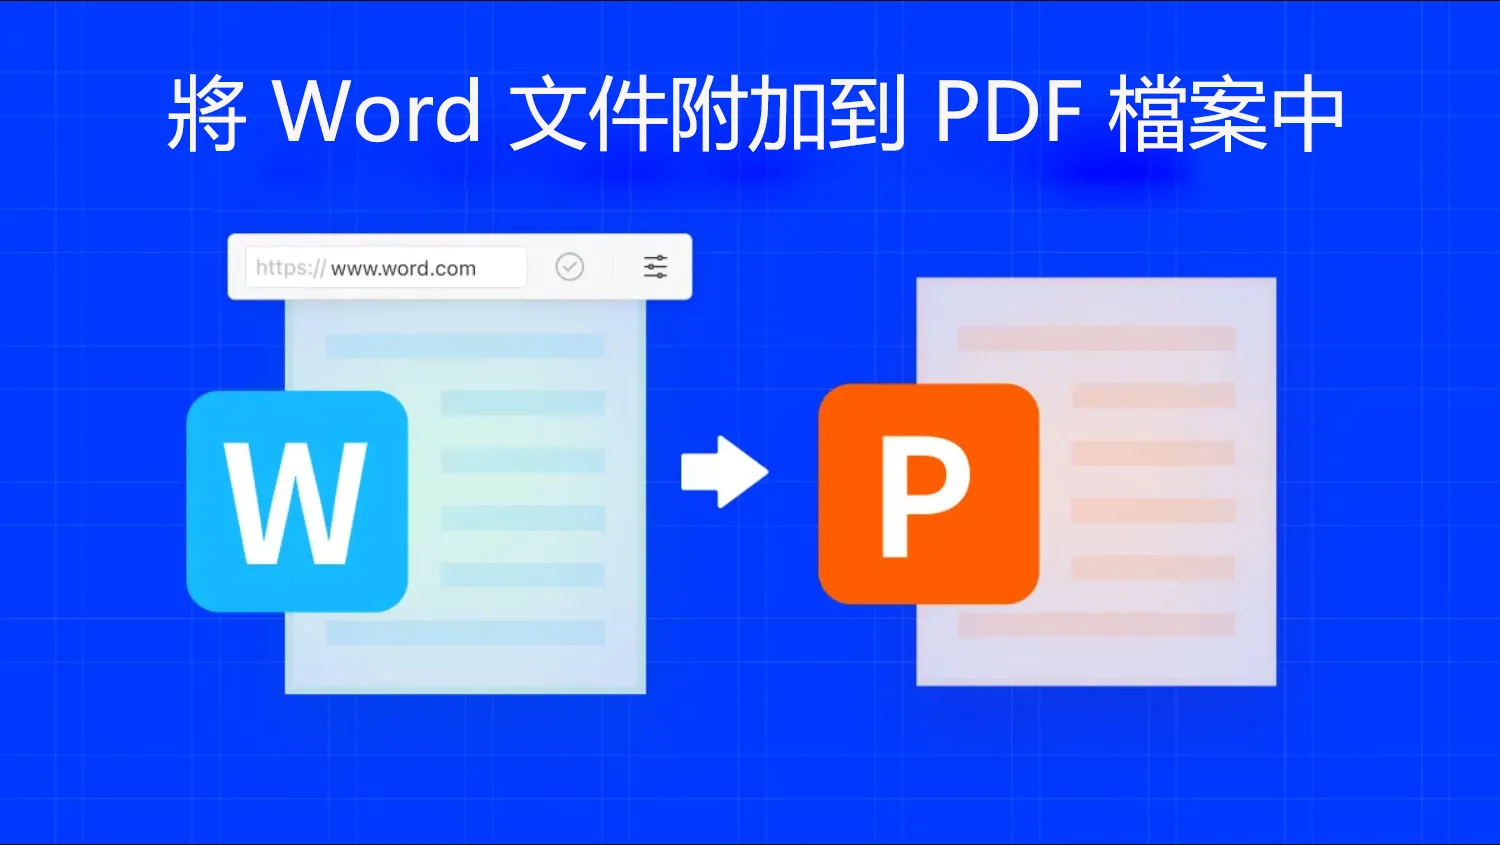 如何將 Word 文件附加到 PDF 檔案中？ 